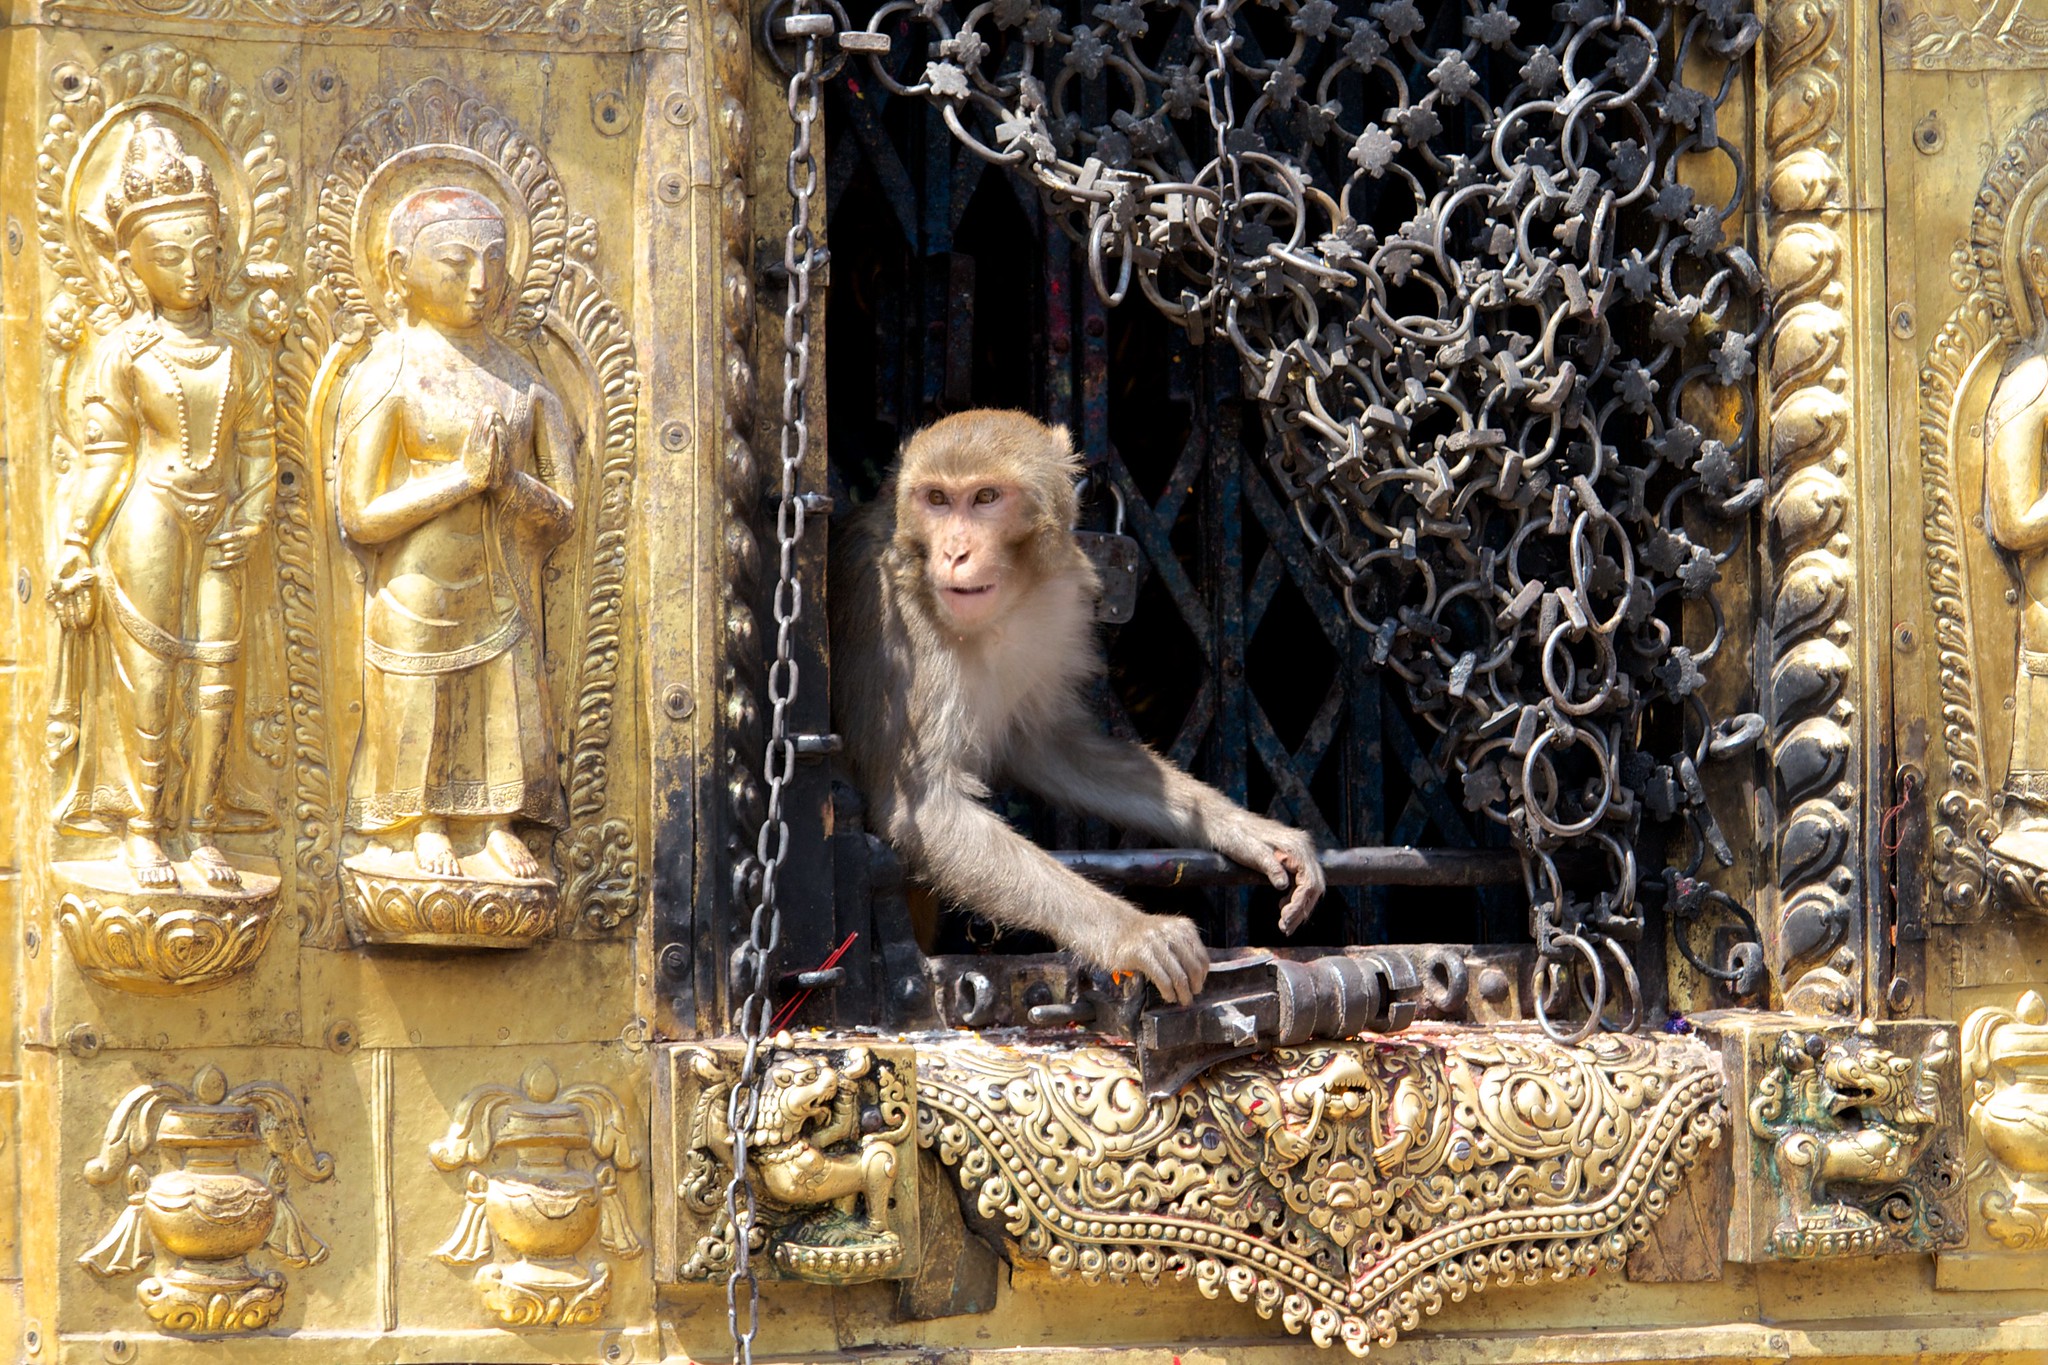 monkey temple